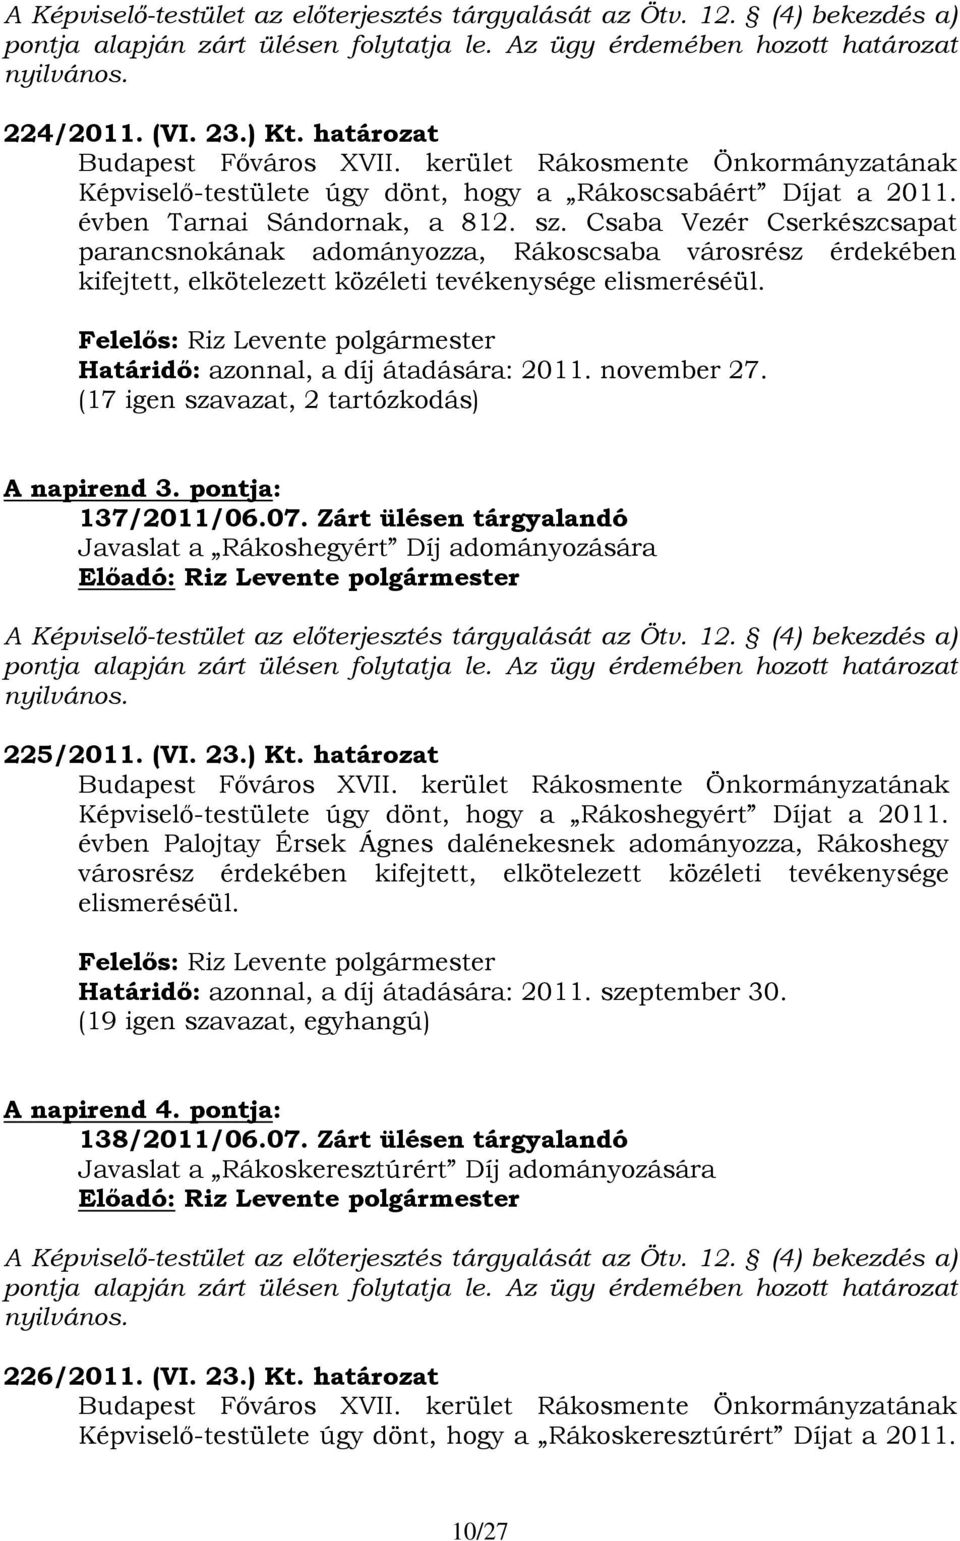 Csaba Vezér Cserkészcsapat parancsnokának adományozza, Rákoscsaba városrész érdekében kifejtett, elkötelezett közéleti tevékenysége elismeréséül. Határidő: azonnal, a díj átadására: 2011. november 27.